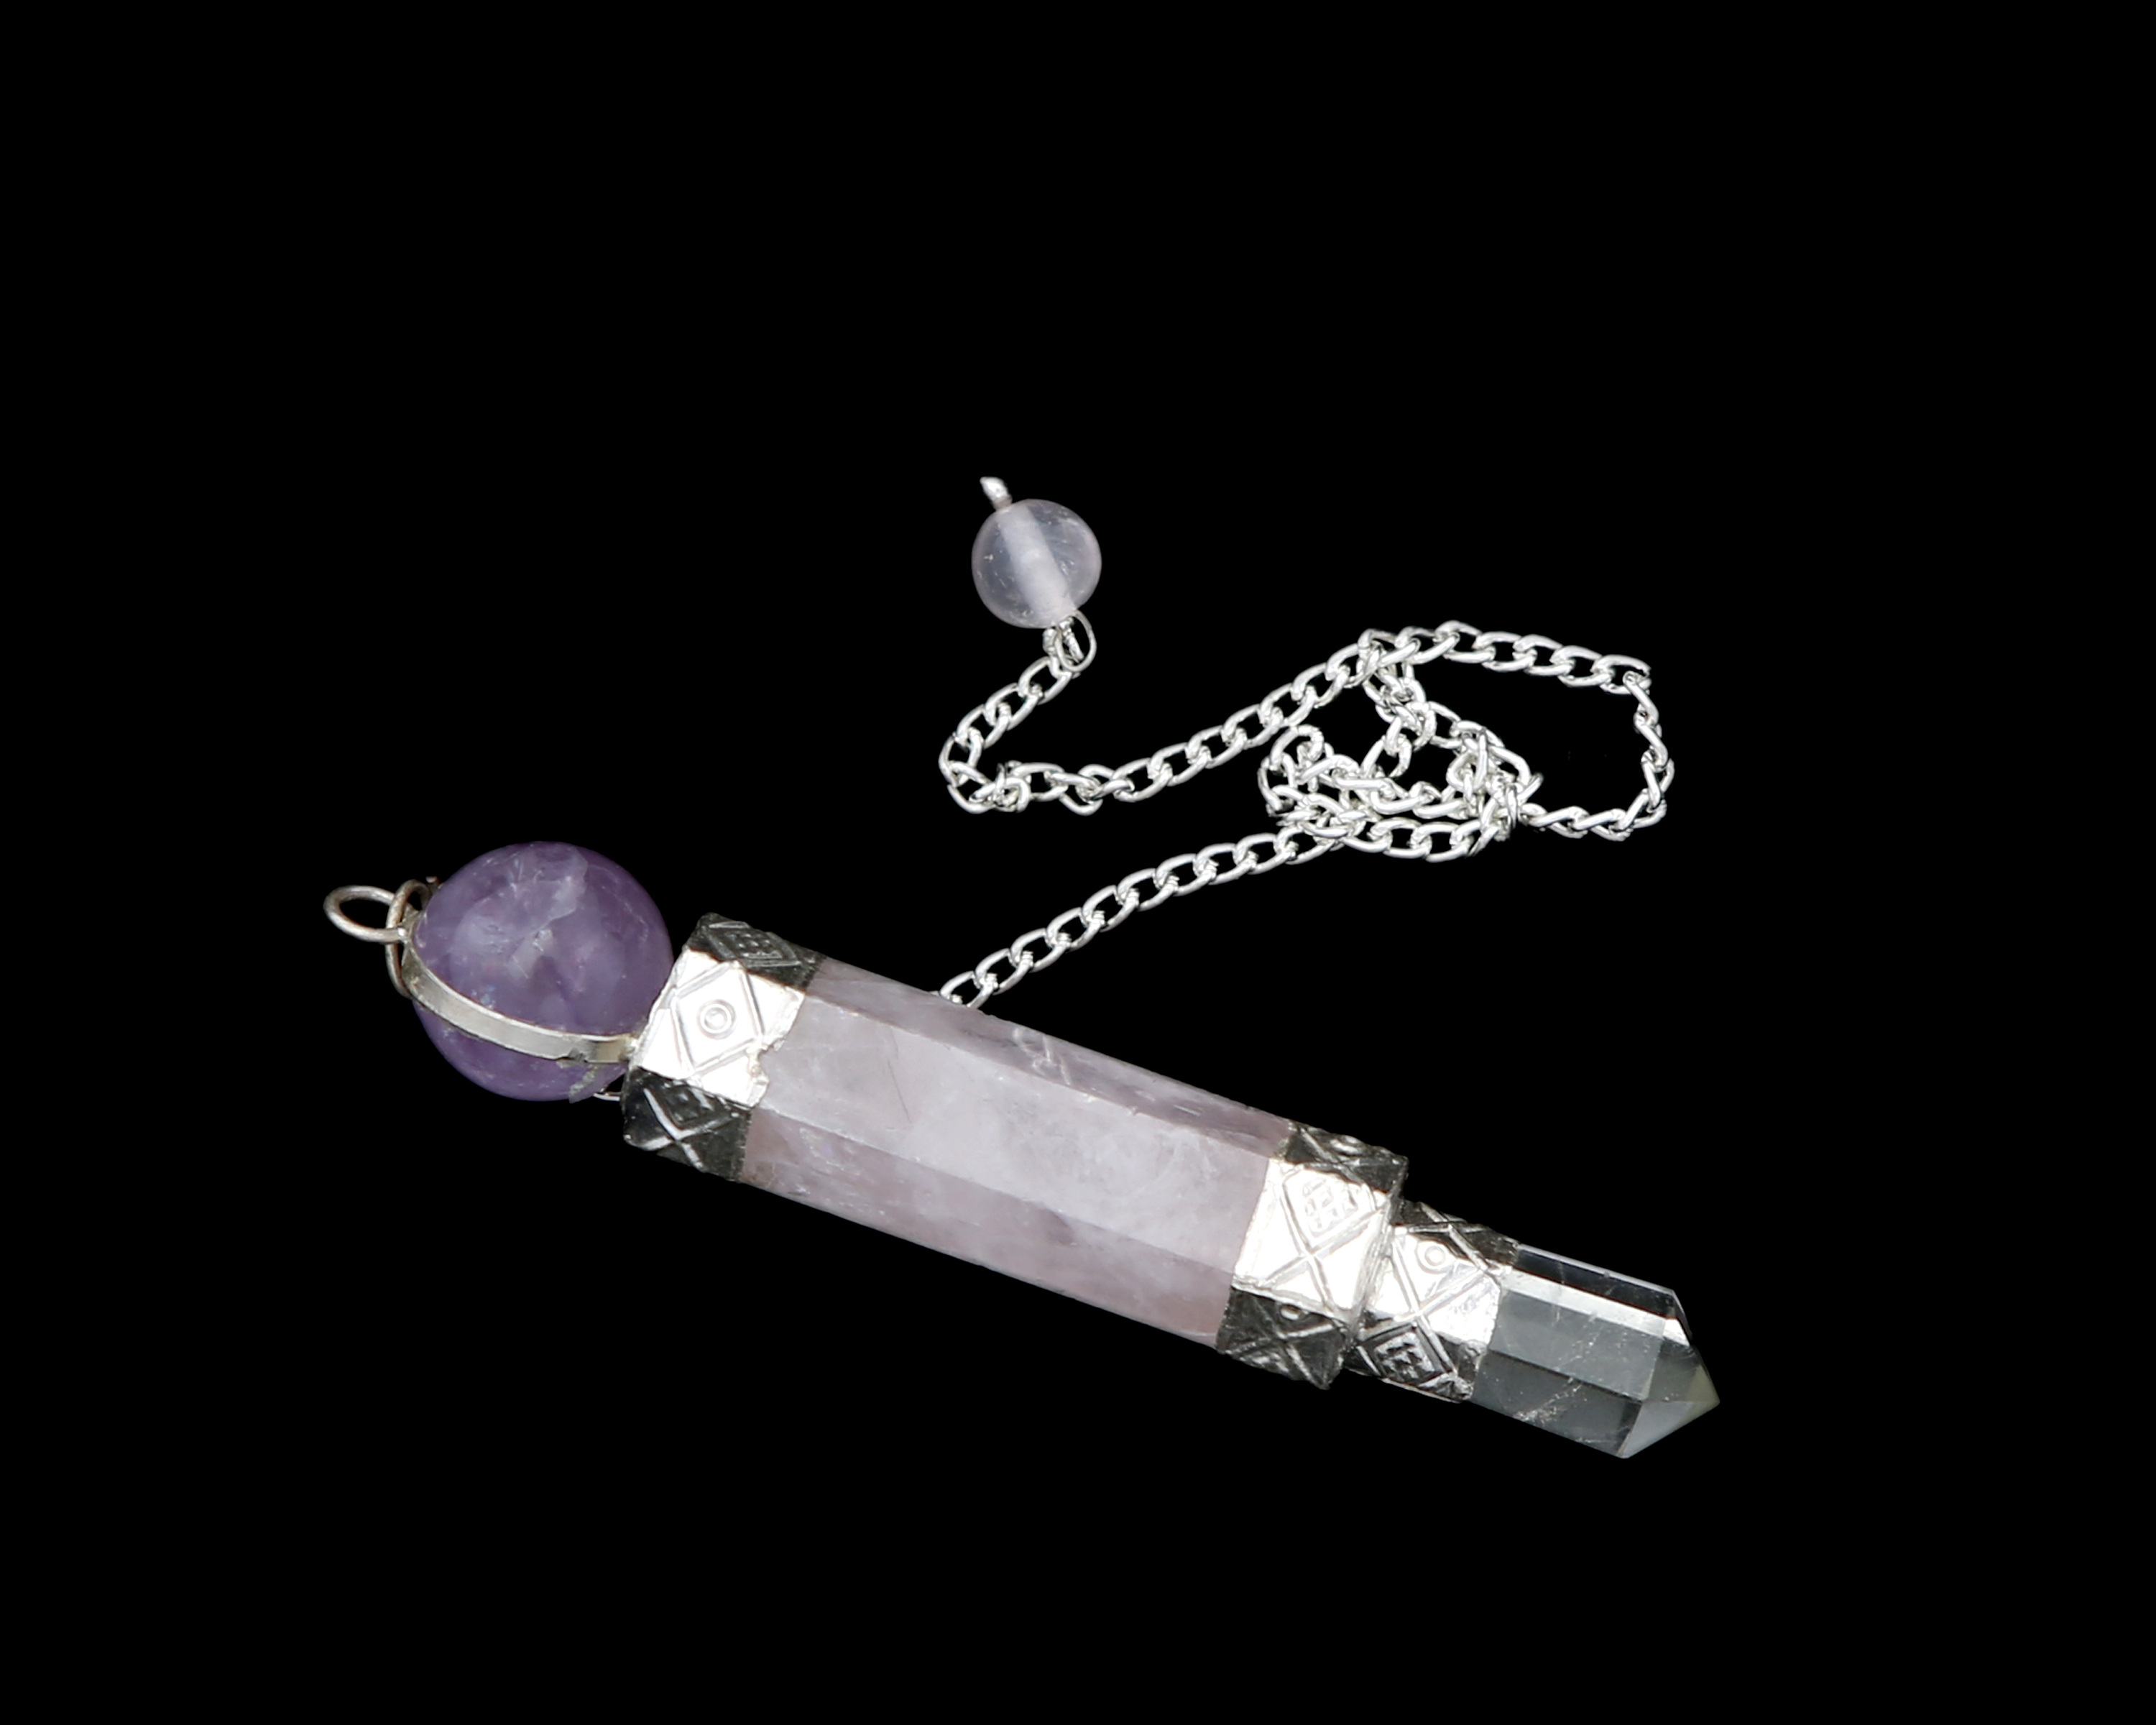 crystal rose quartz pendulum